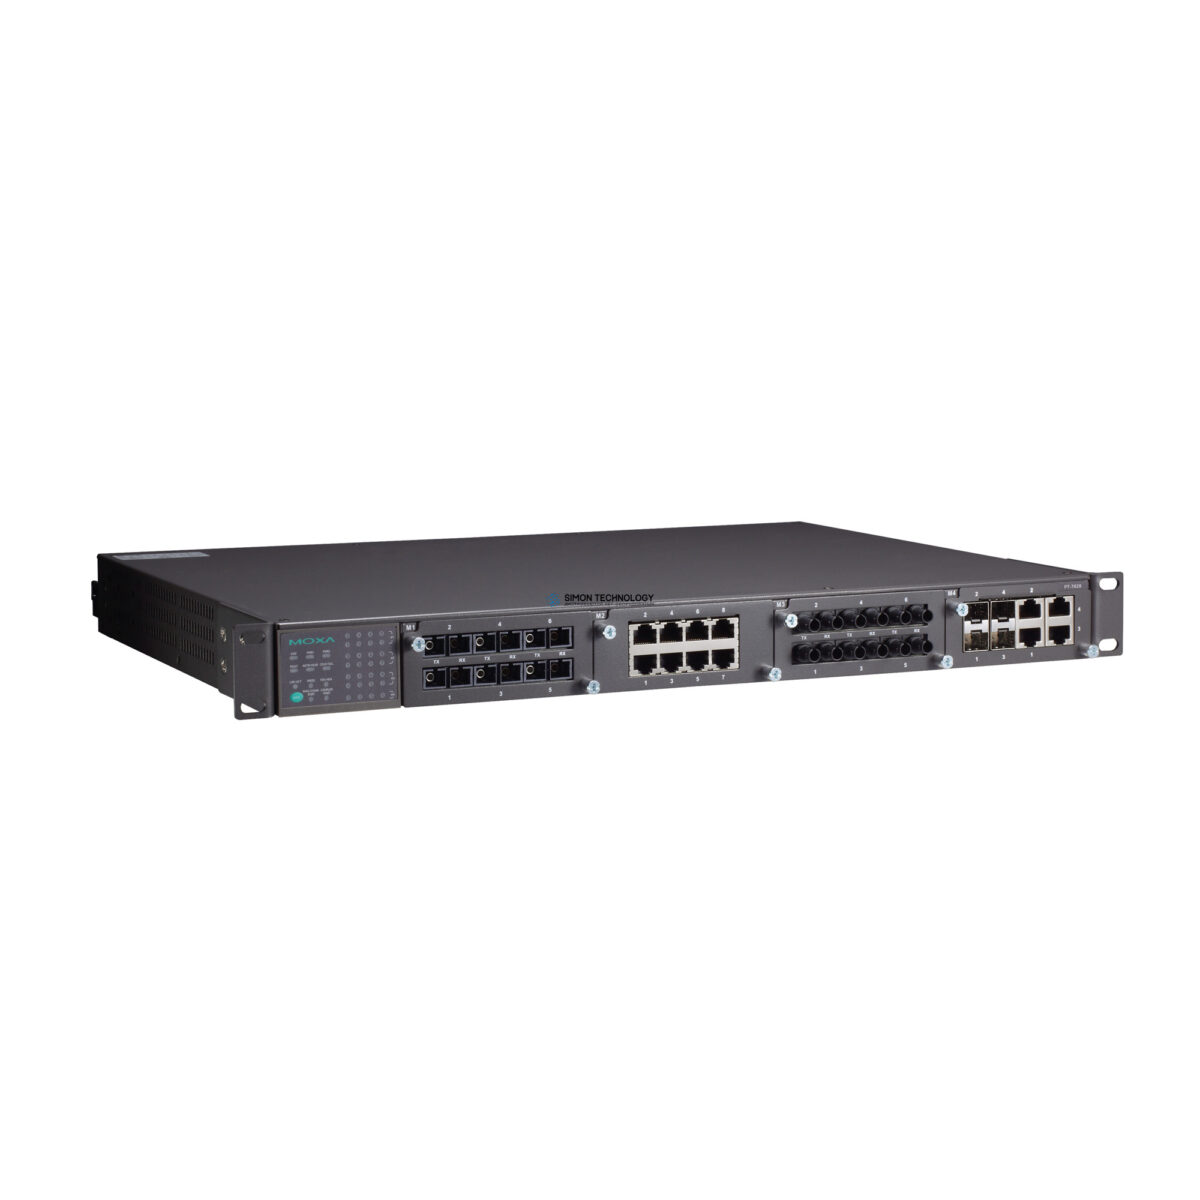 Коммутаторы Moxa Iec 61850-3 24+4G Layer3 Switch 88-300V+88-30 (PT-7828-R-HV)